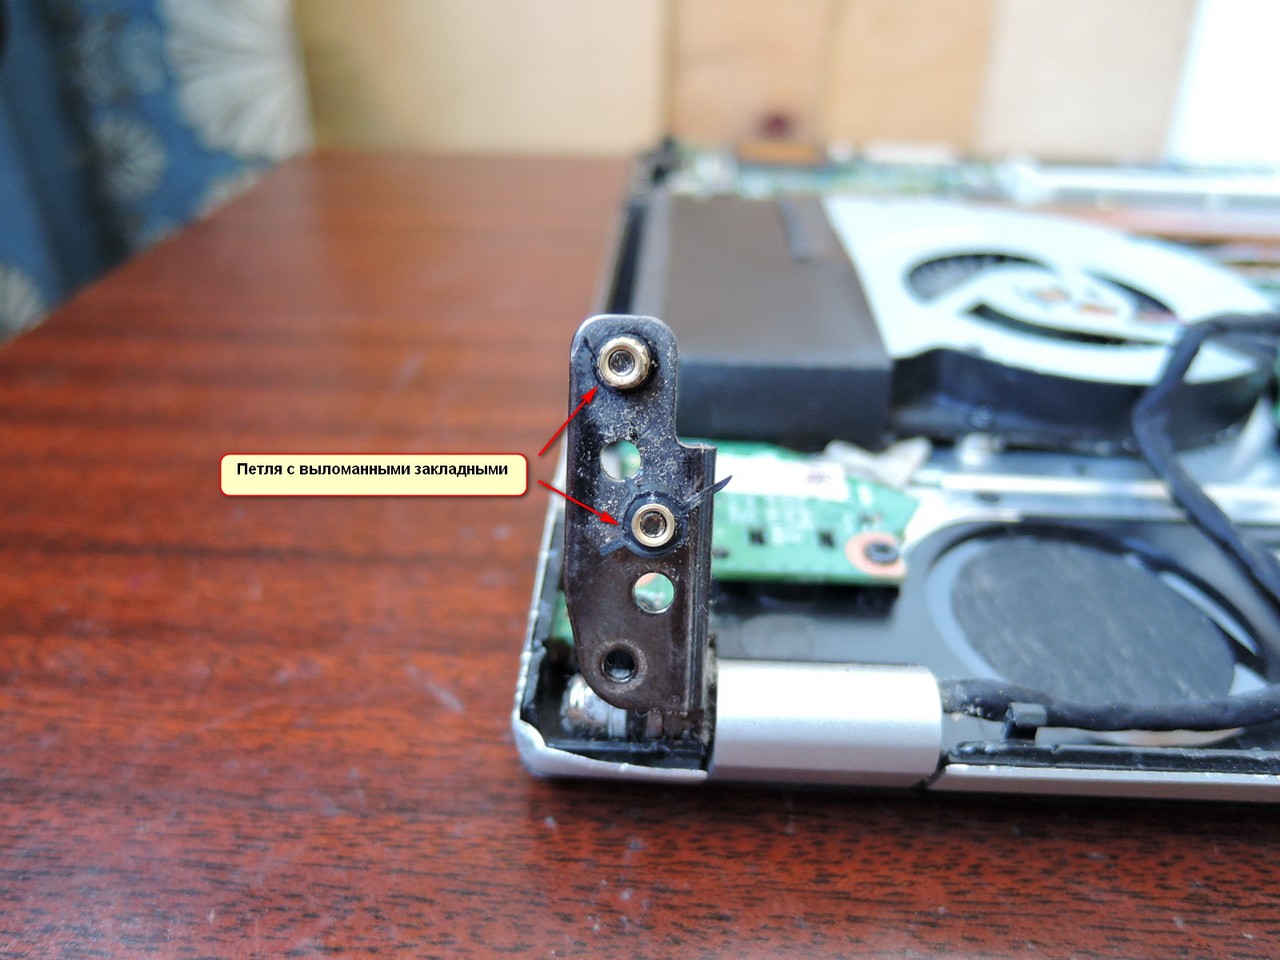 Разборка ноутбука Asus N56 - cломанное крепление петель дисплея